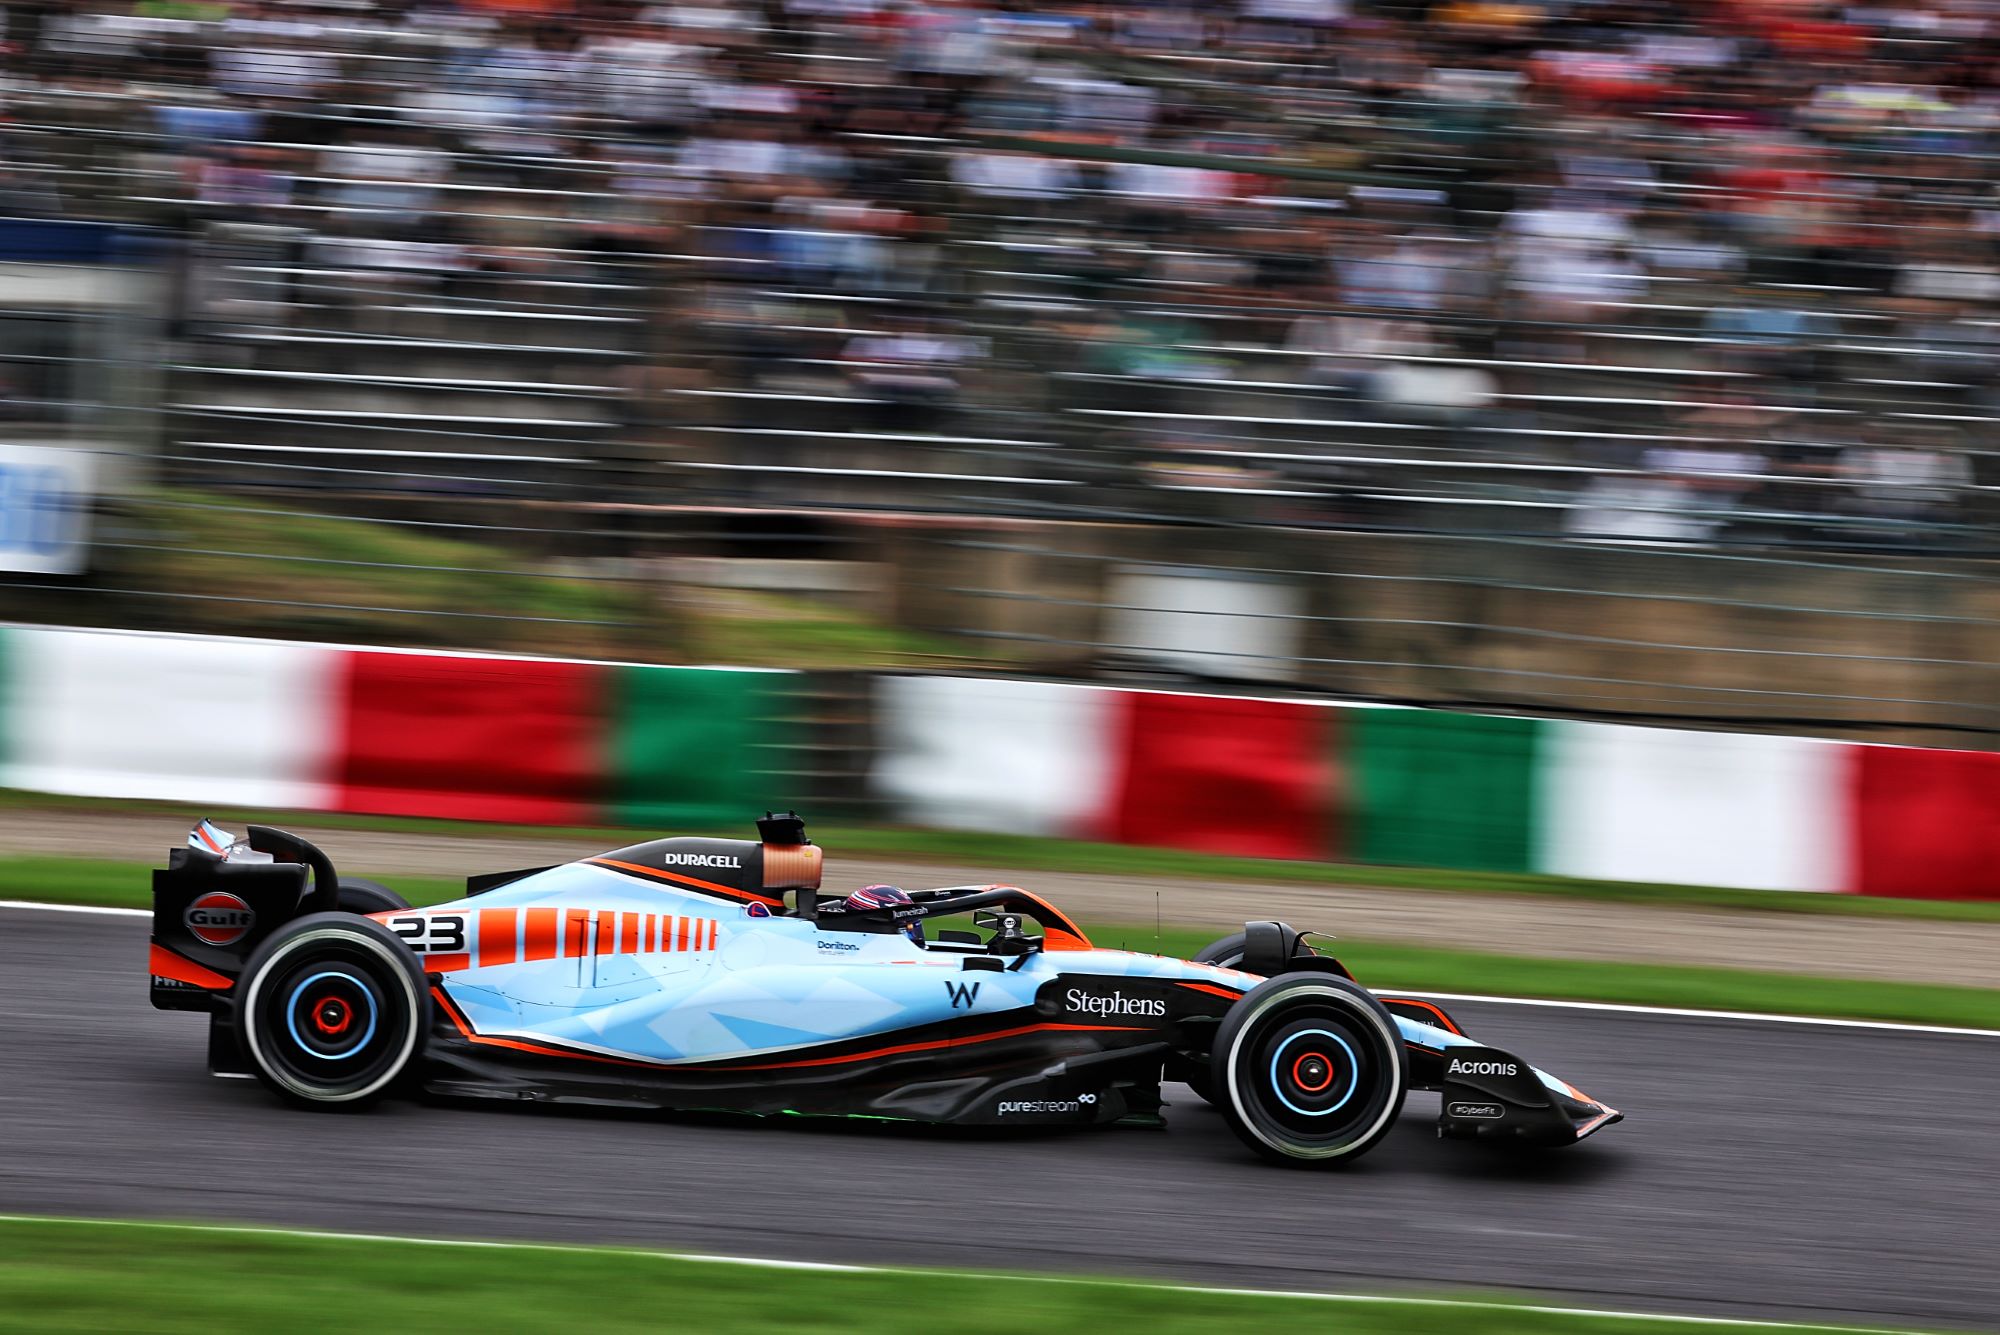 F1: Confira as imagens dos primeiros treinos para o GP do Japão, em Suzuka  - Notícia de F1